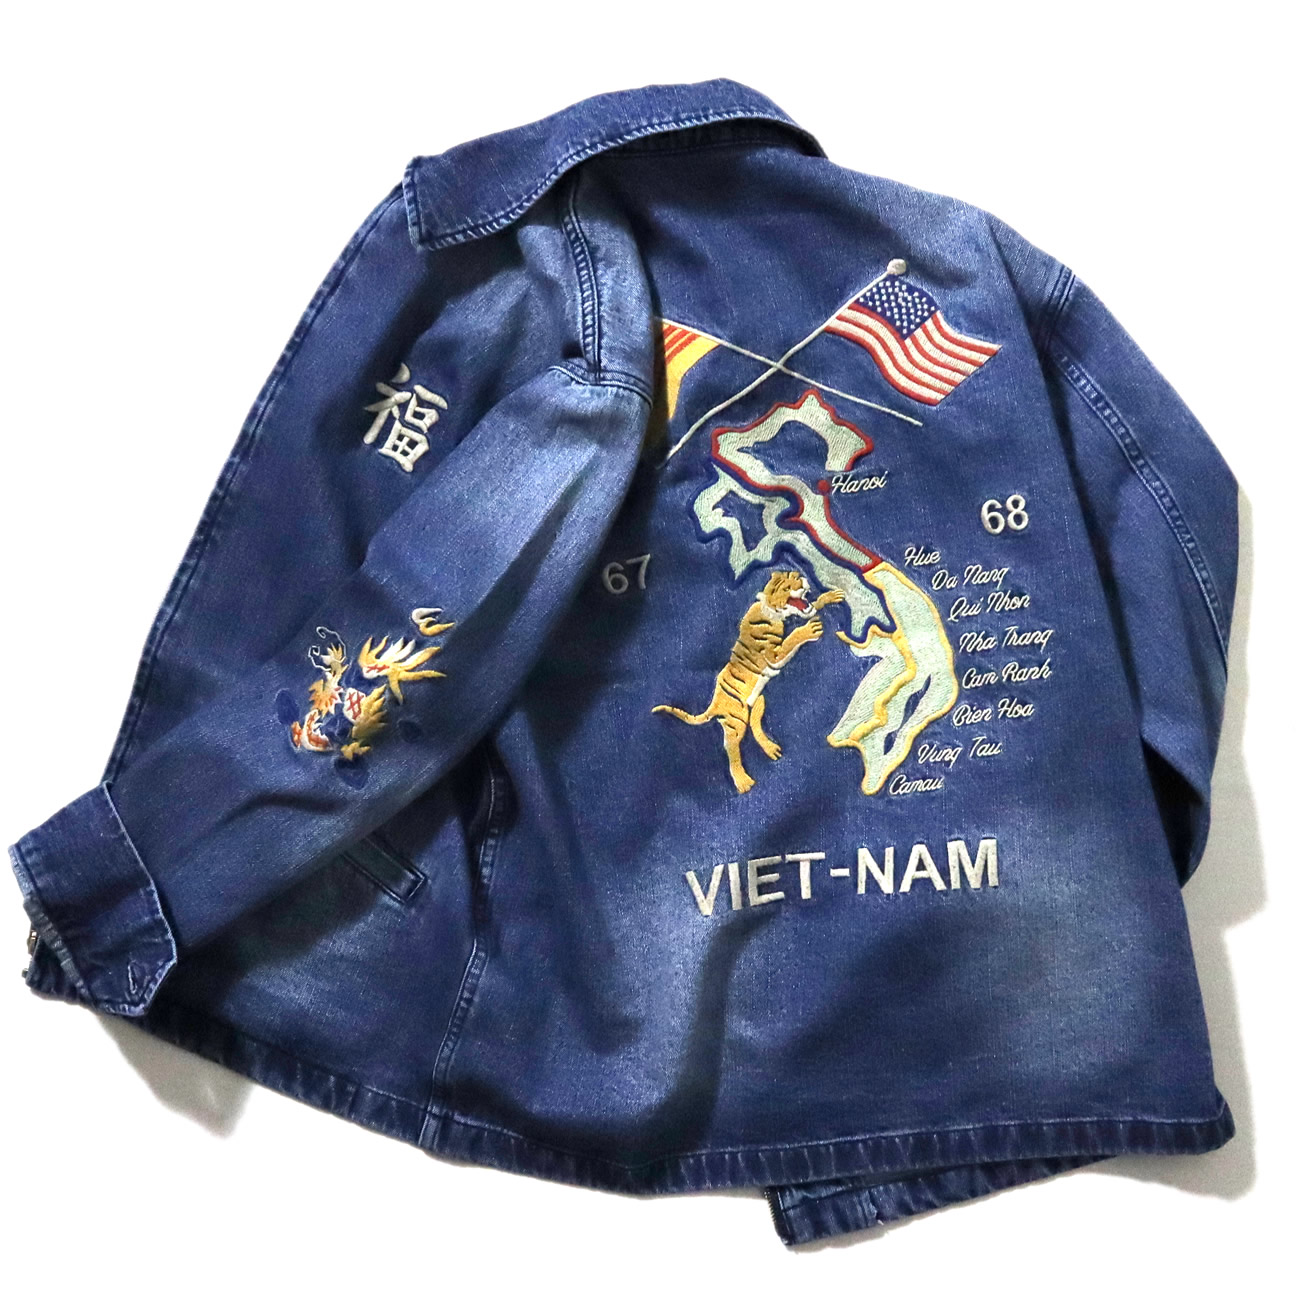 歴史的な名作にデニム生地を組み合わせた『デニム ベトナム ジャケット